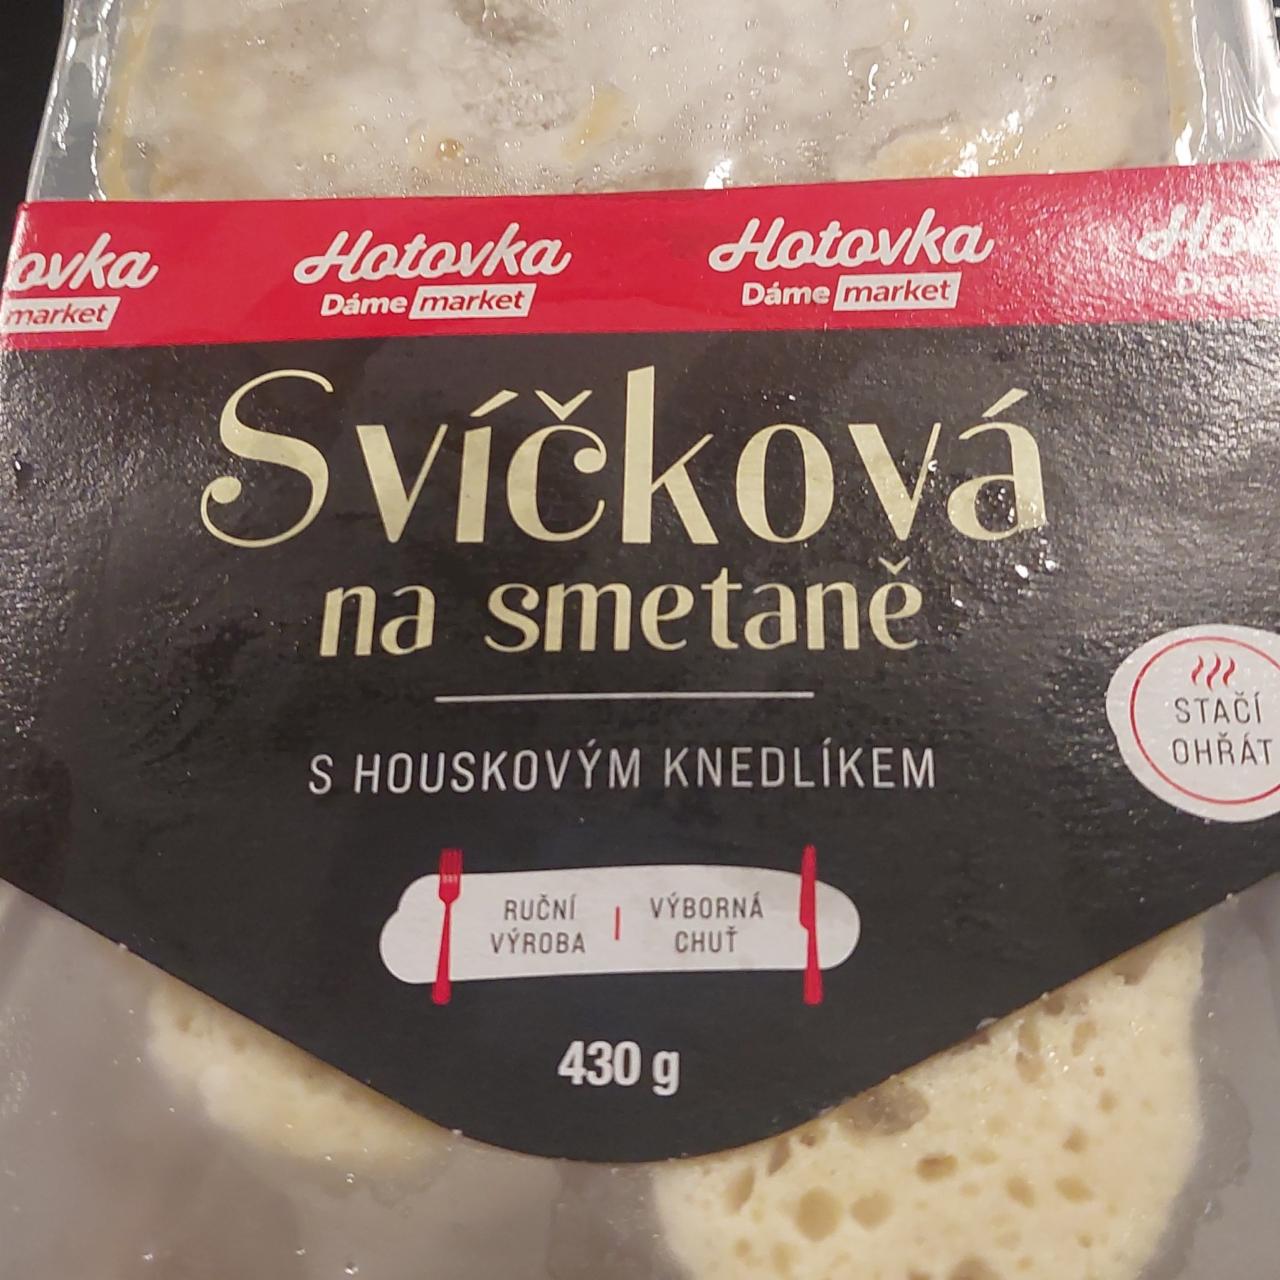 Fotografie - Svíčková na smetaně s houskovým knedlíkem Hotovka dáme market